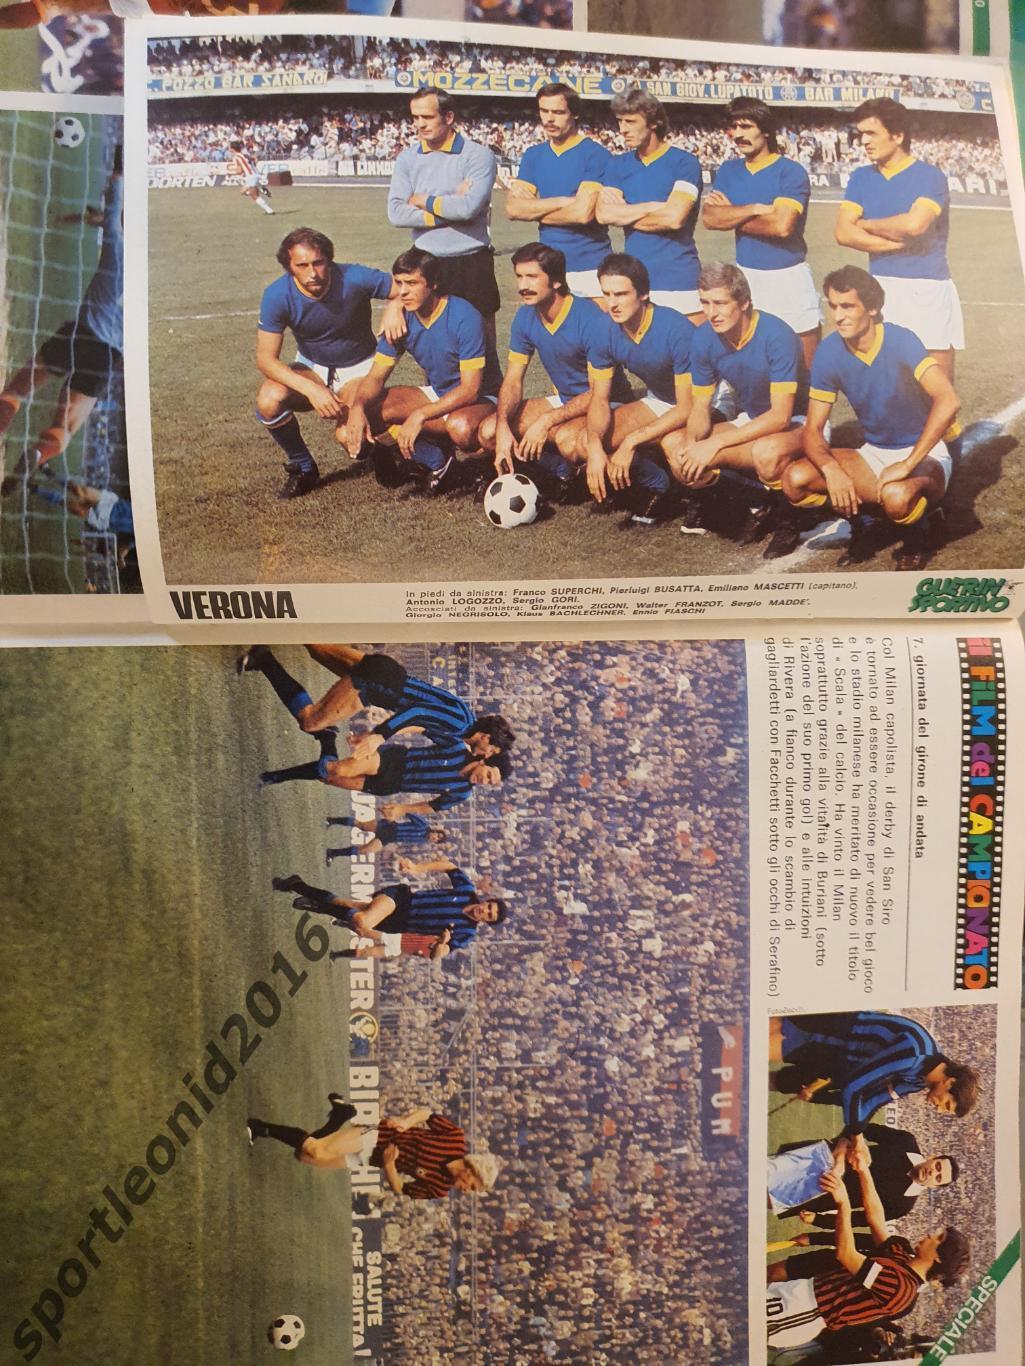 Guerin Sportivo 46/1977.12 постеров клубов высшей итальянской лиги.2 4